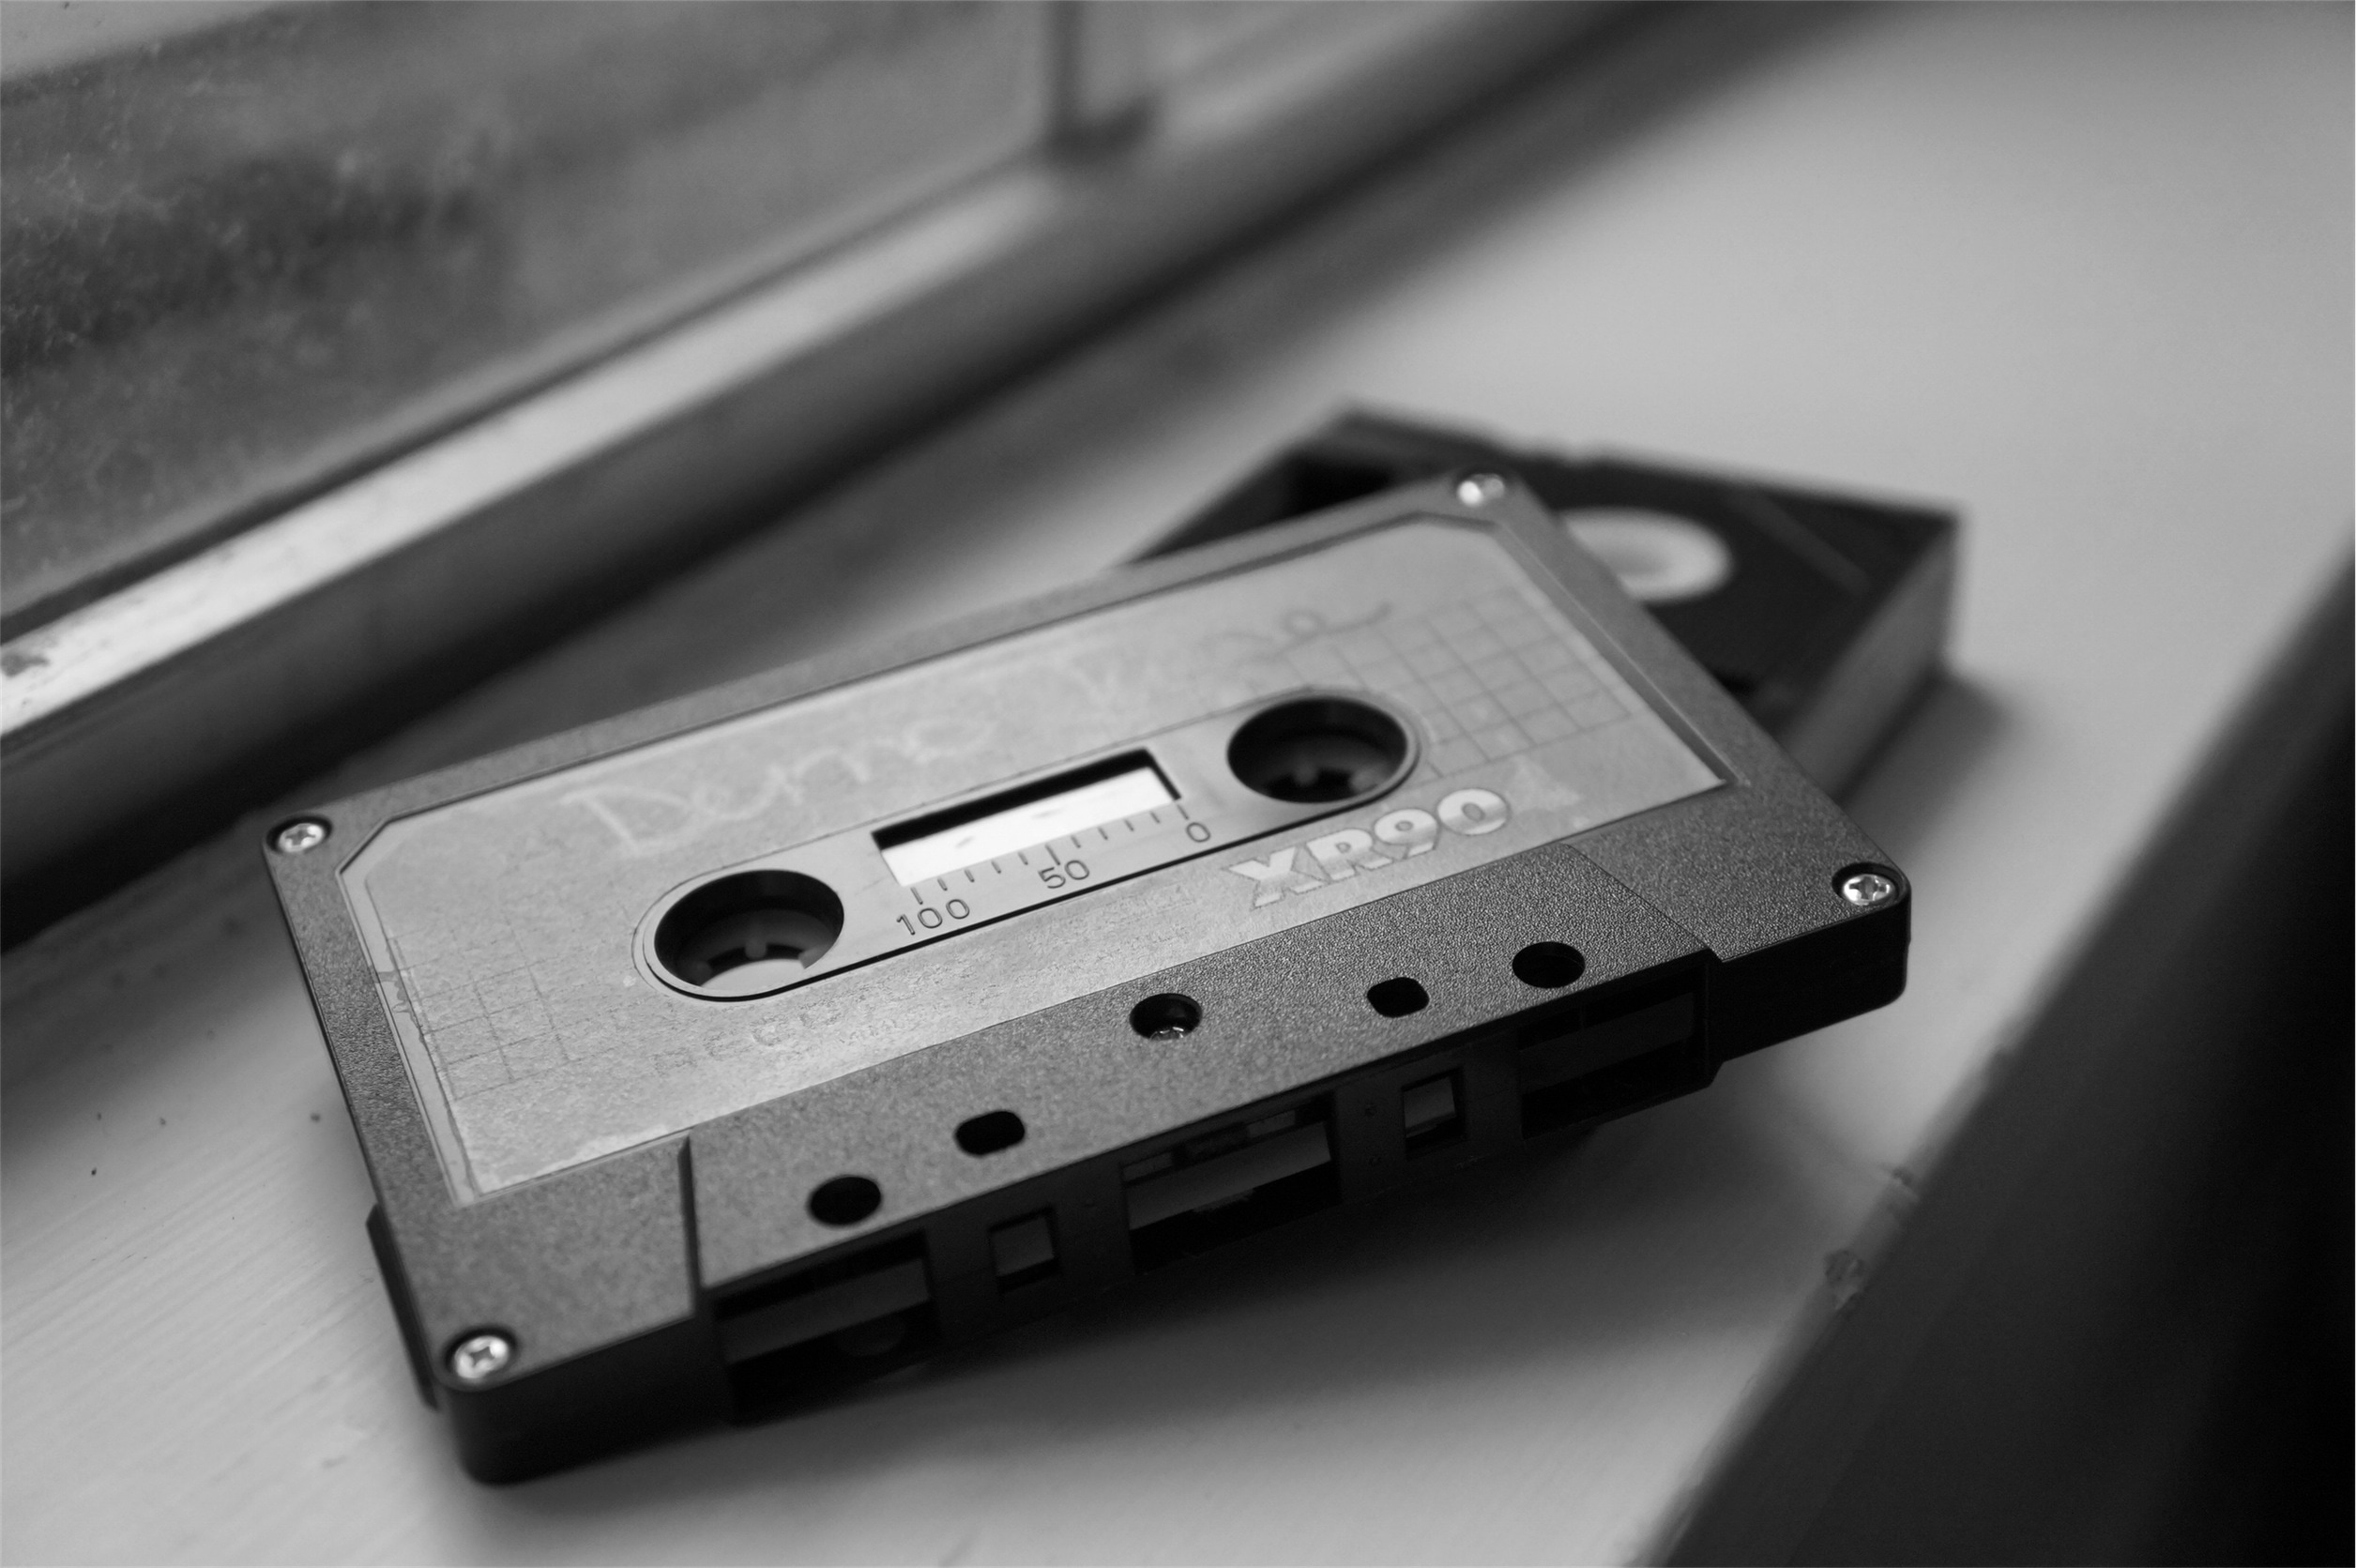 kassettentapete,kompaktkassette,einfarbig,metall